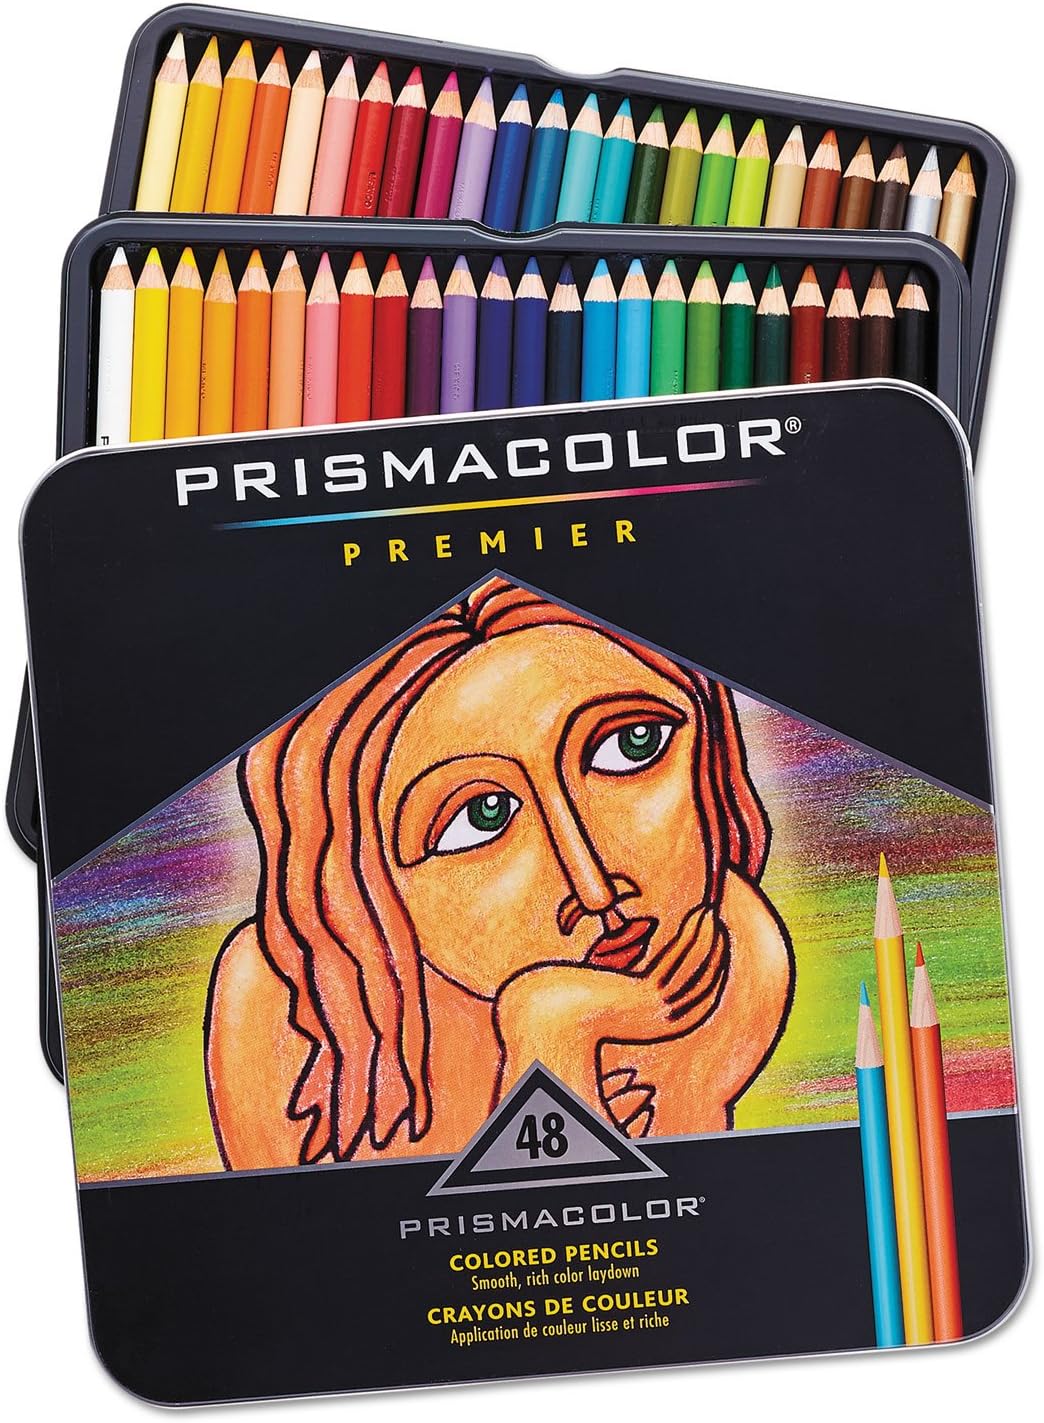 PRISMACOLOR PREMIER COLORED PENCILS 48 PC